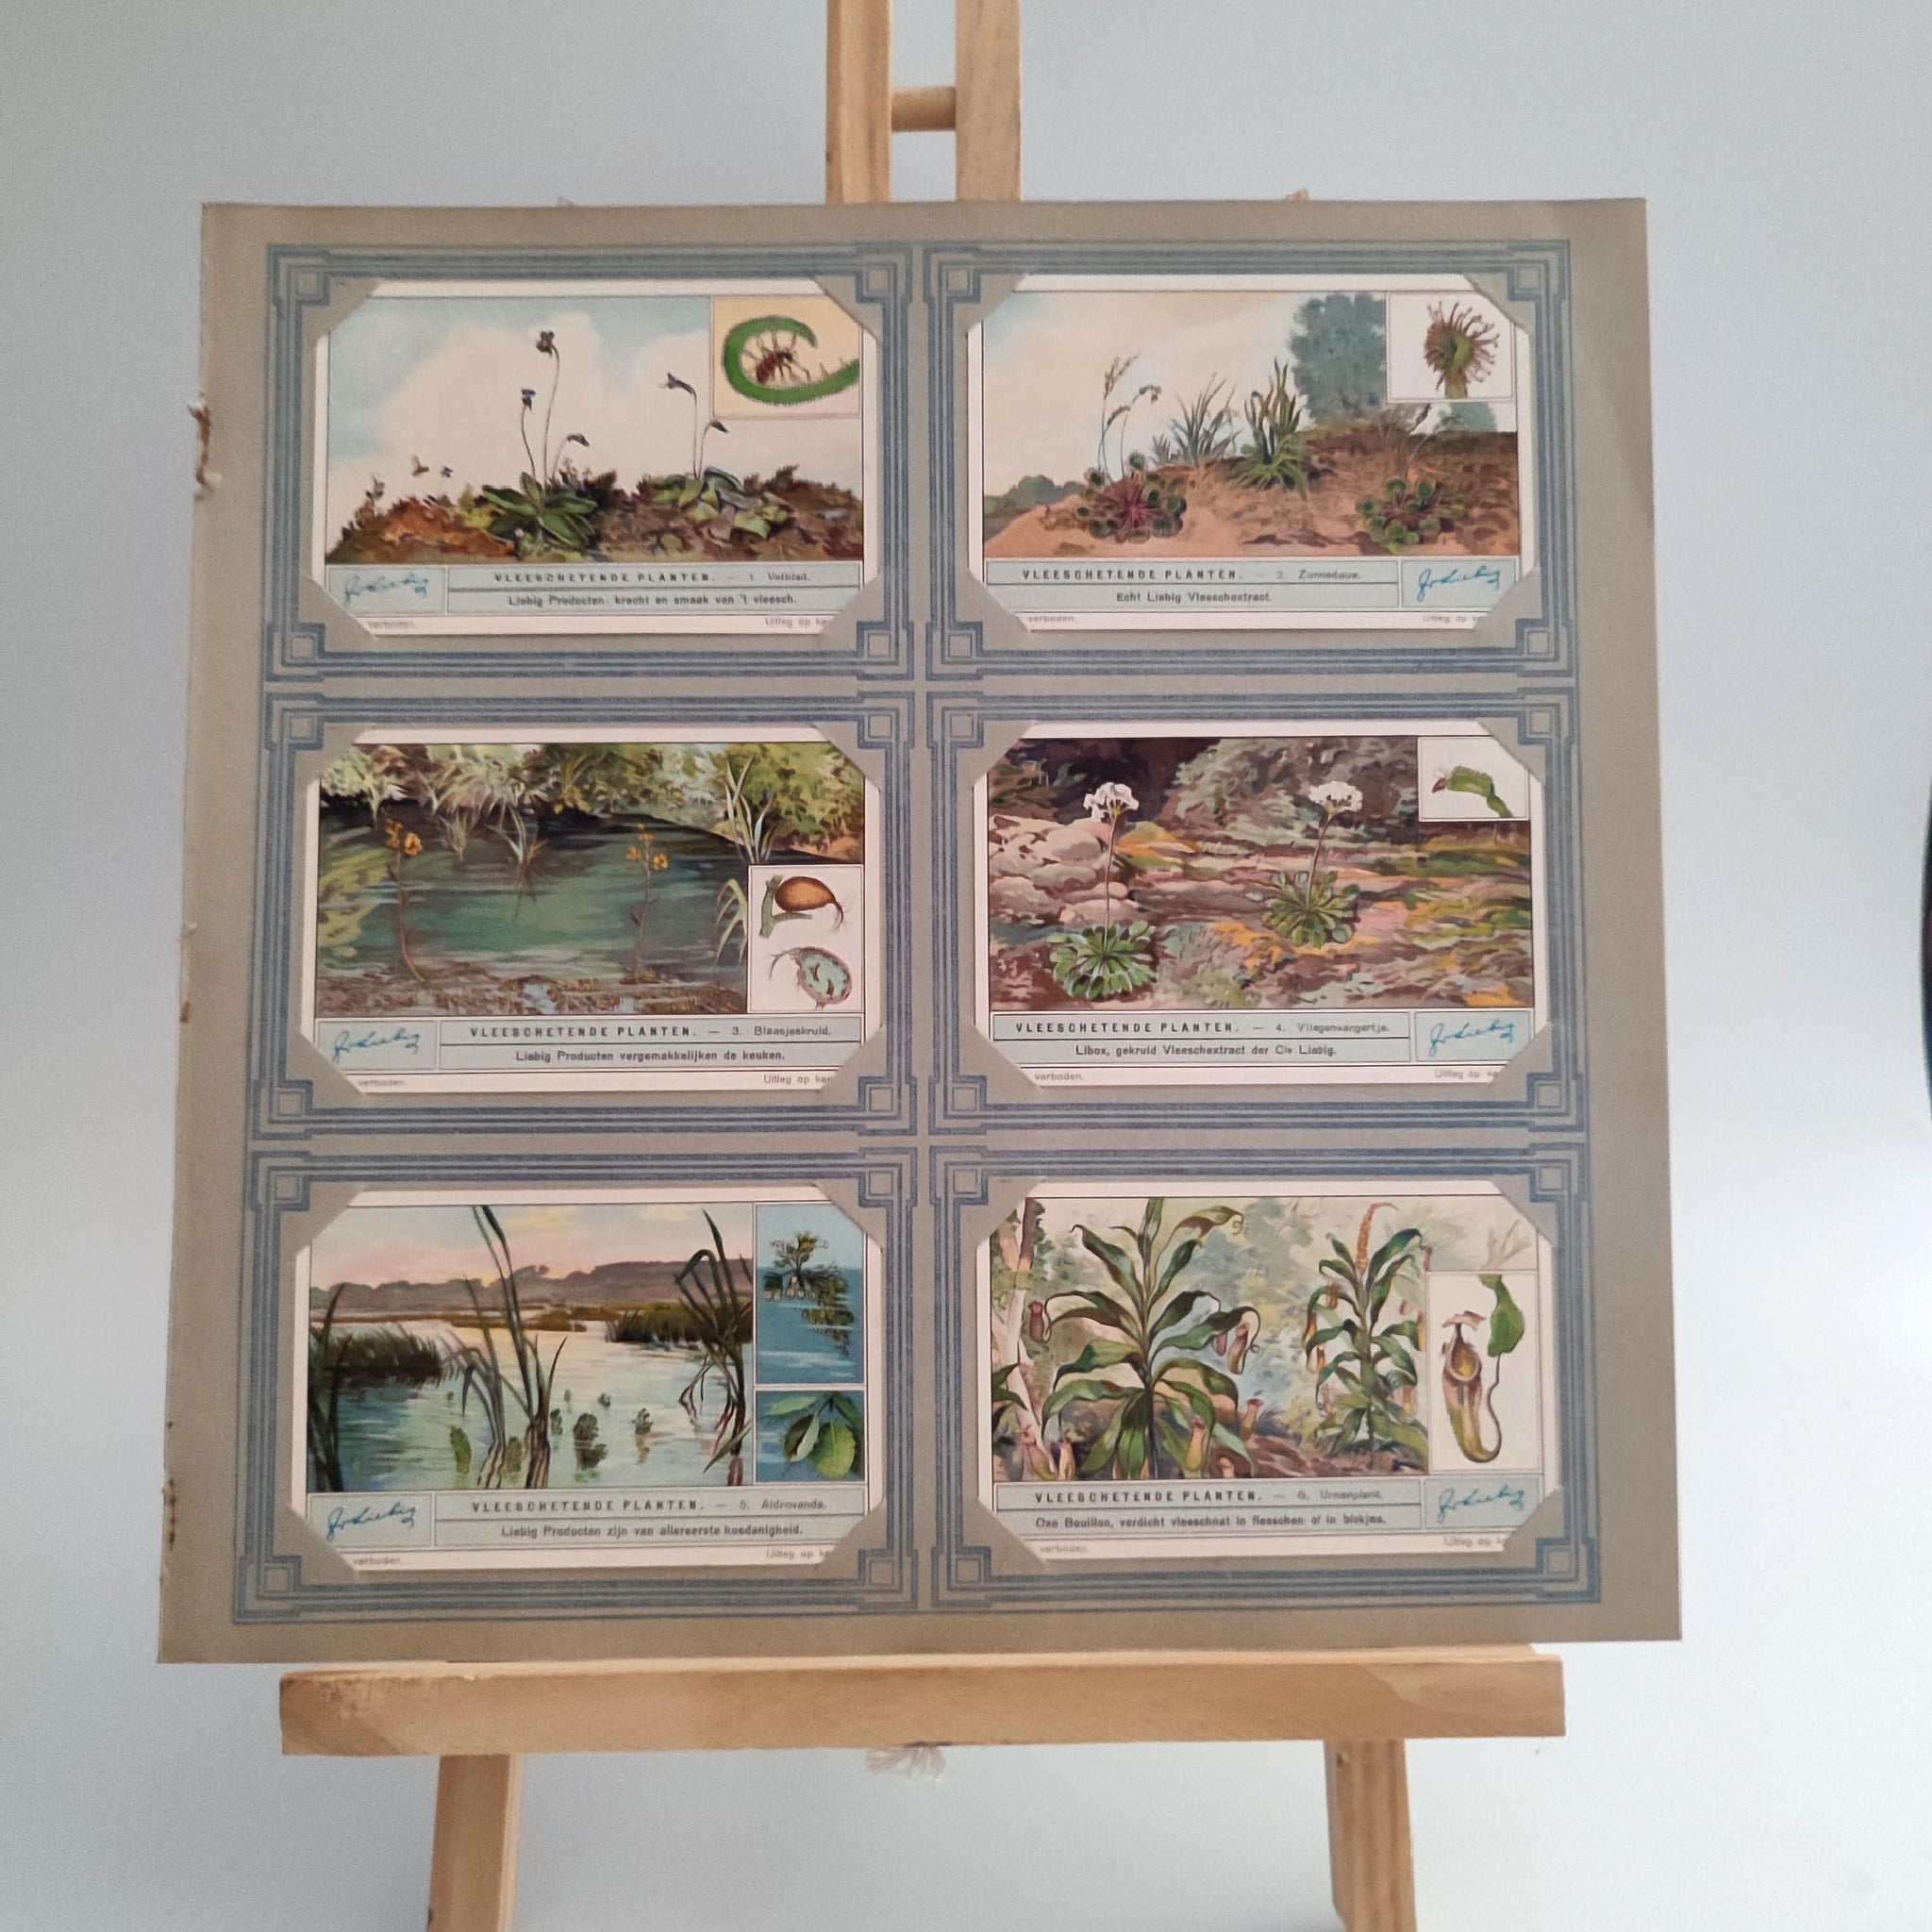 דף למיסגור מס' 15, עם 6 גלויות העולם המופלא, וינטג' פלמי, שנות השישים